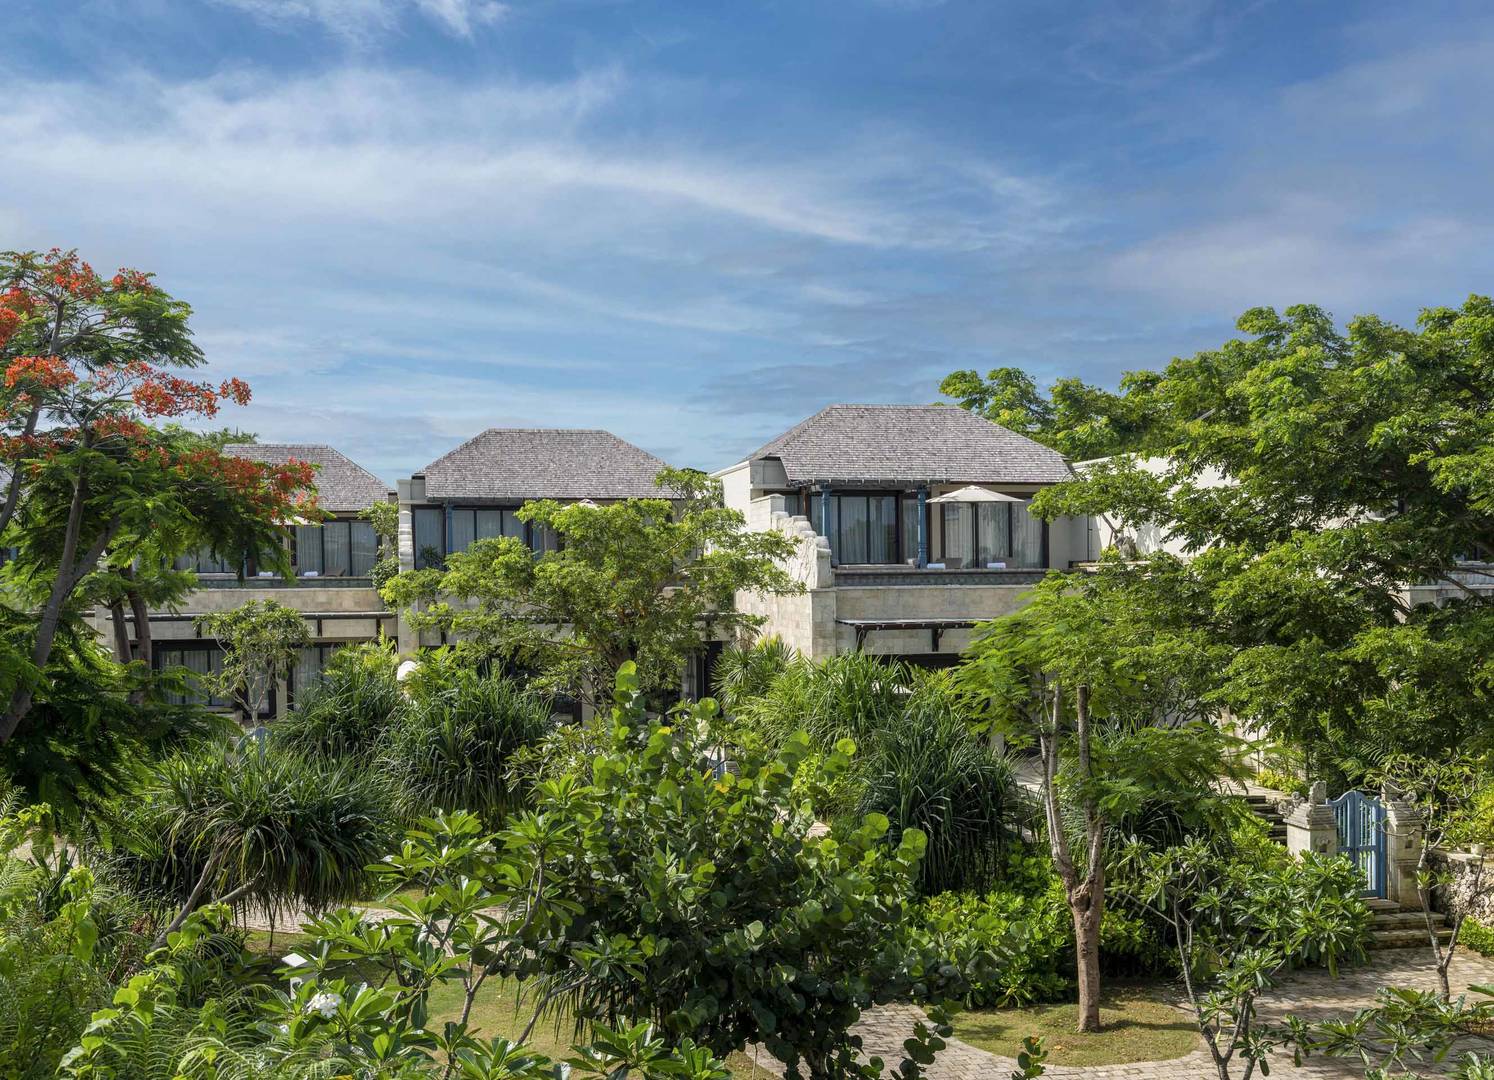 The villas at Jumeirah Bali